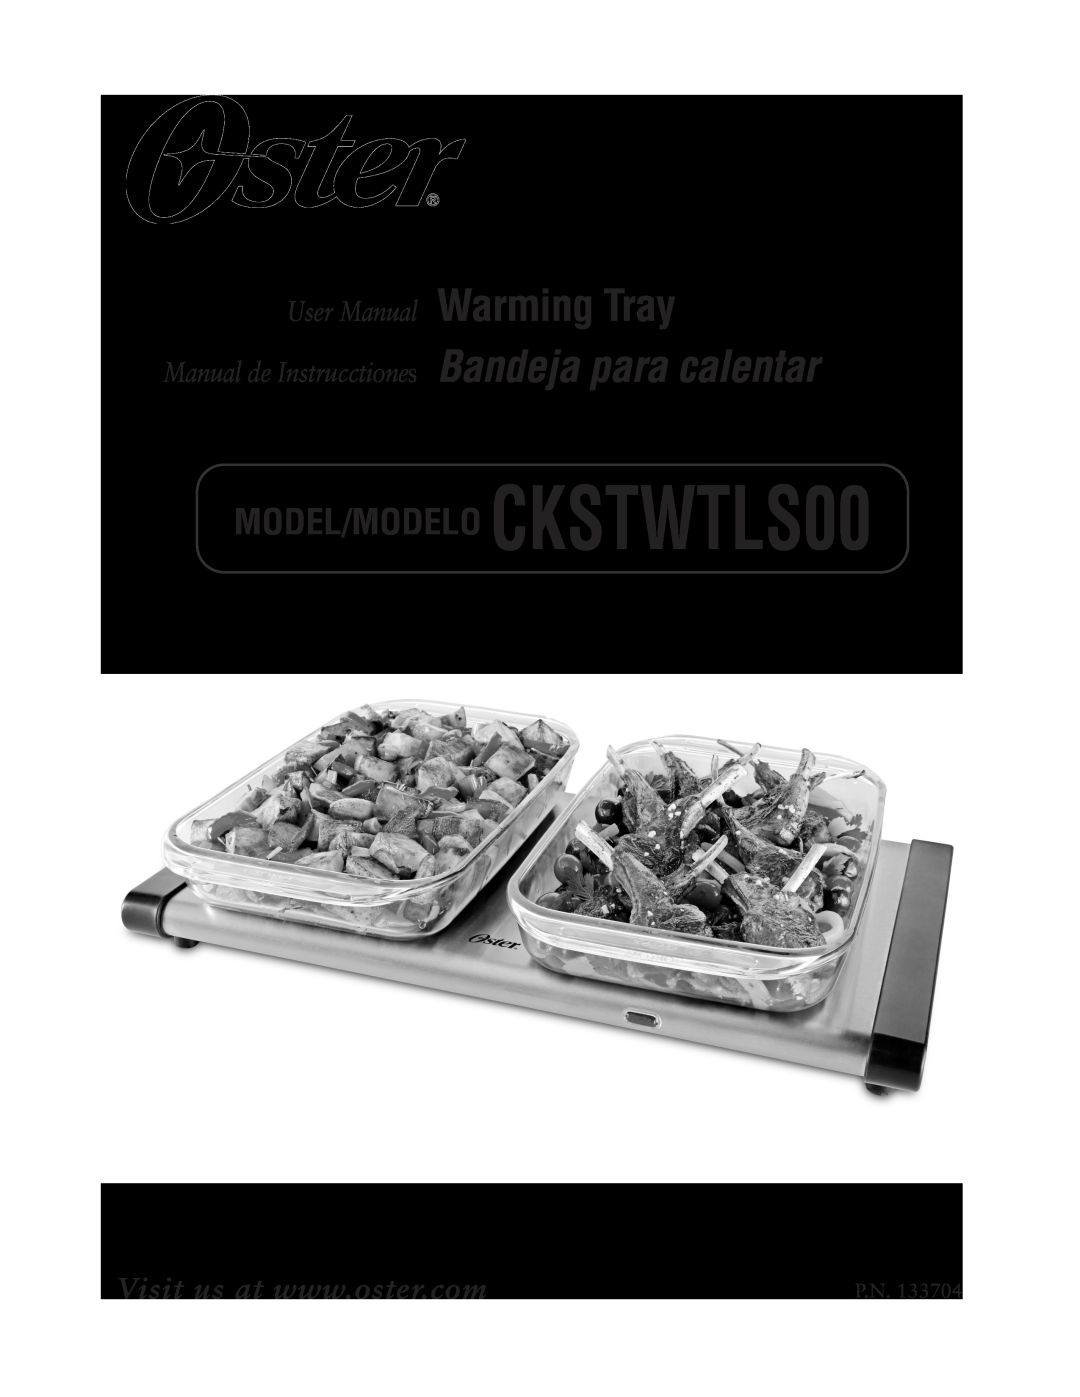 Oster 133704 user manual MODEL/MODELO CKSTWTLS00, Manual de Instrucctiones Bandeja para calentar 